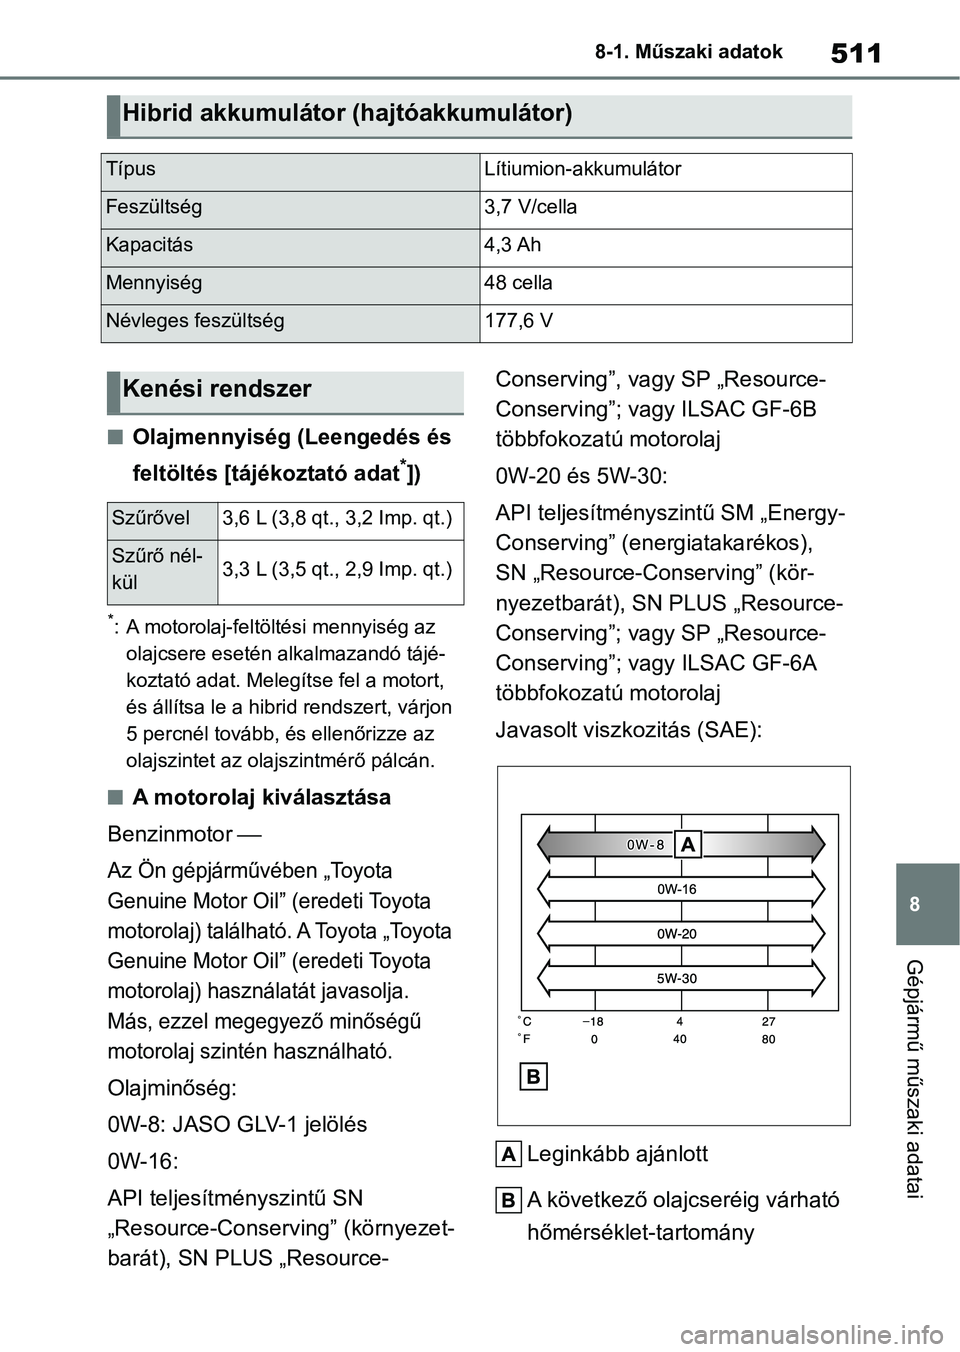 TOYOTA YARIS CROSS 2021  Kezelési útmutató (in Hungarian) 511
8
8-1. Műszaki adatok
Gépjármű műszaki adatai
nOlajmennyiség (Leengedés és 
feltöltés [tájékoztató adat
*])
*: A motorolaj-feltöltési mennyiség az 
olajcsere esetén alkalmazandó 